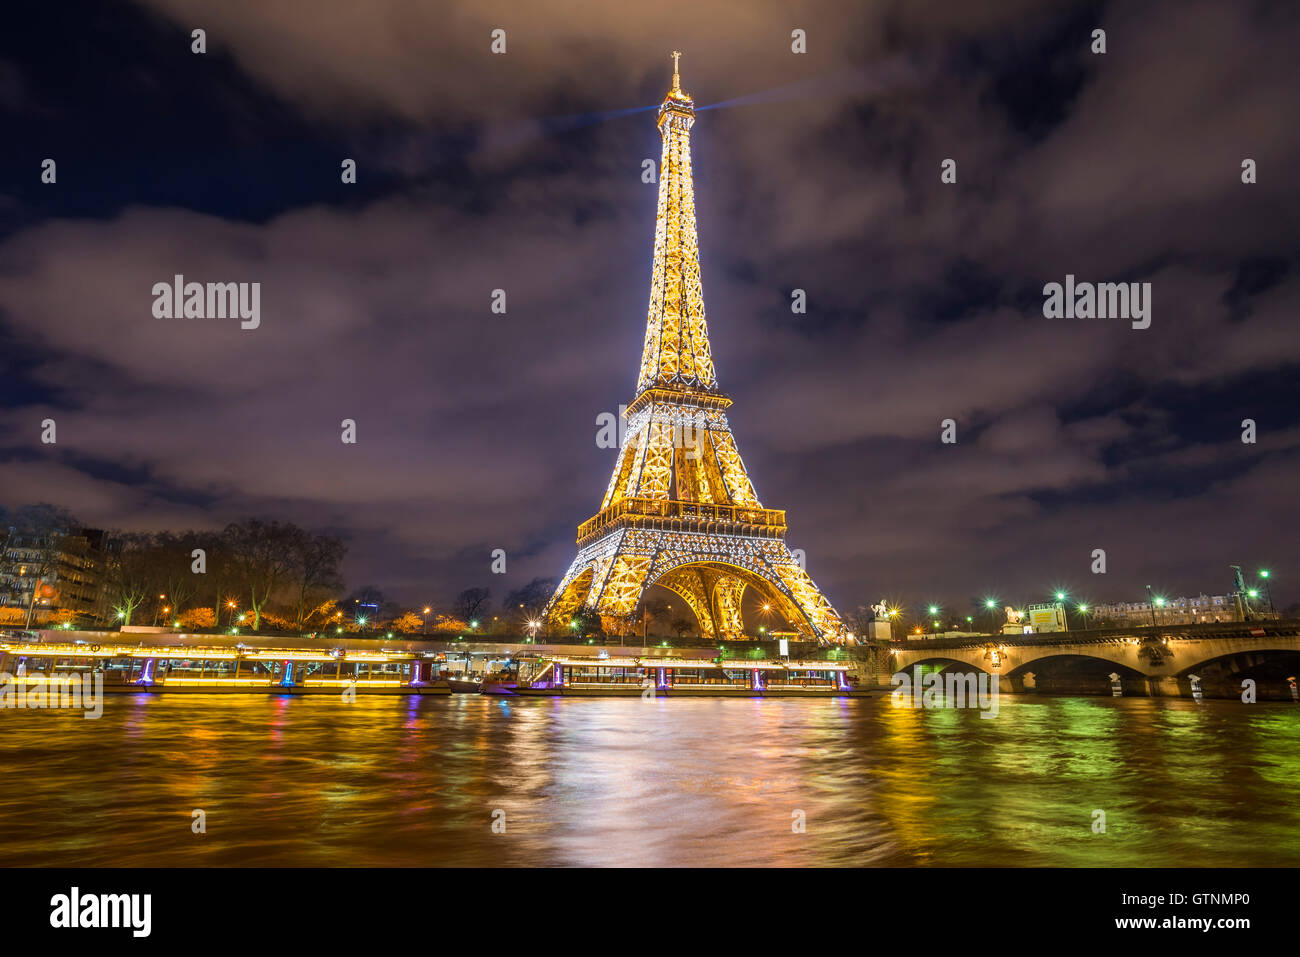 París, Francia - 14 de febrero de 2016: La Torre Eiffel luces doradas, en la noche, que se refleja en las aguas del río Sena. Foto de stock